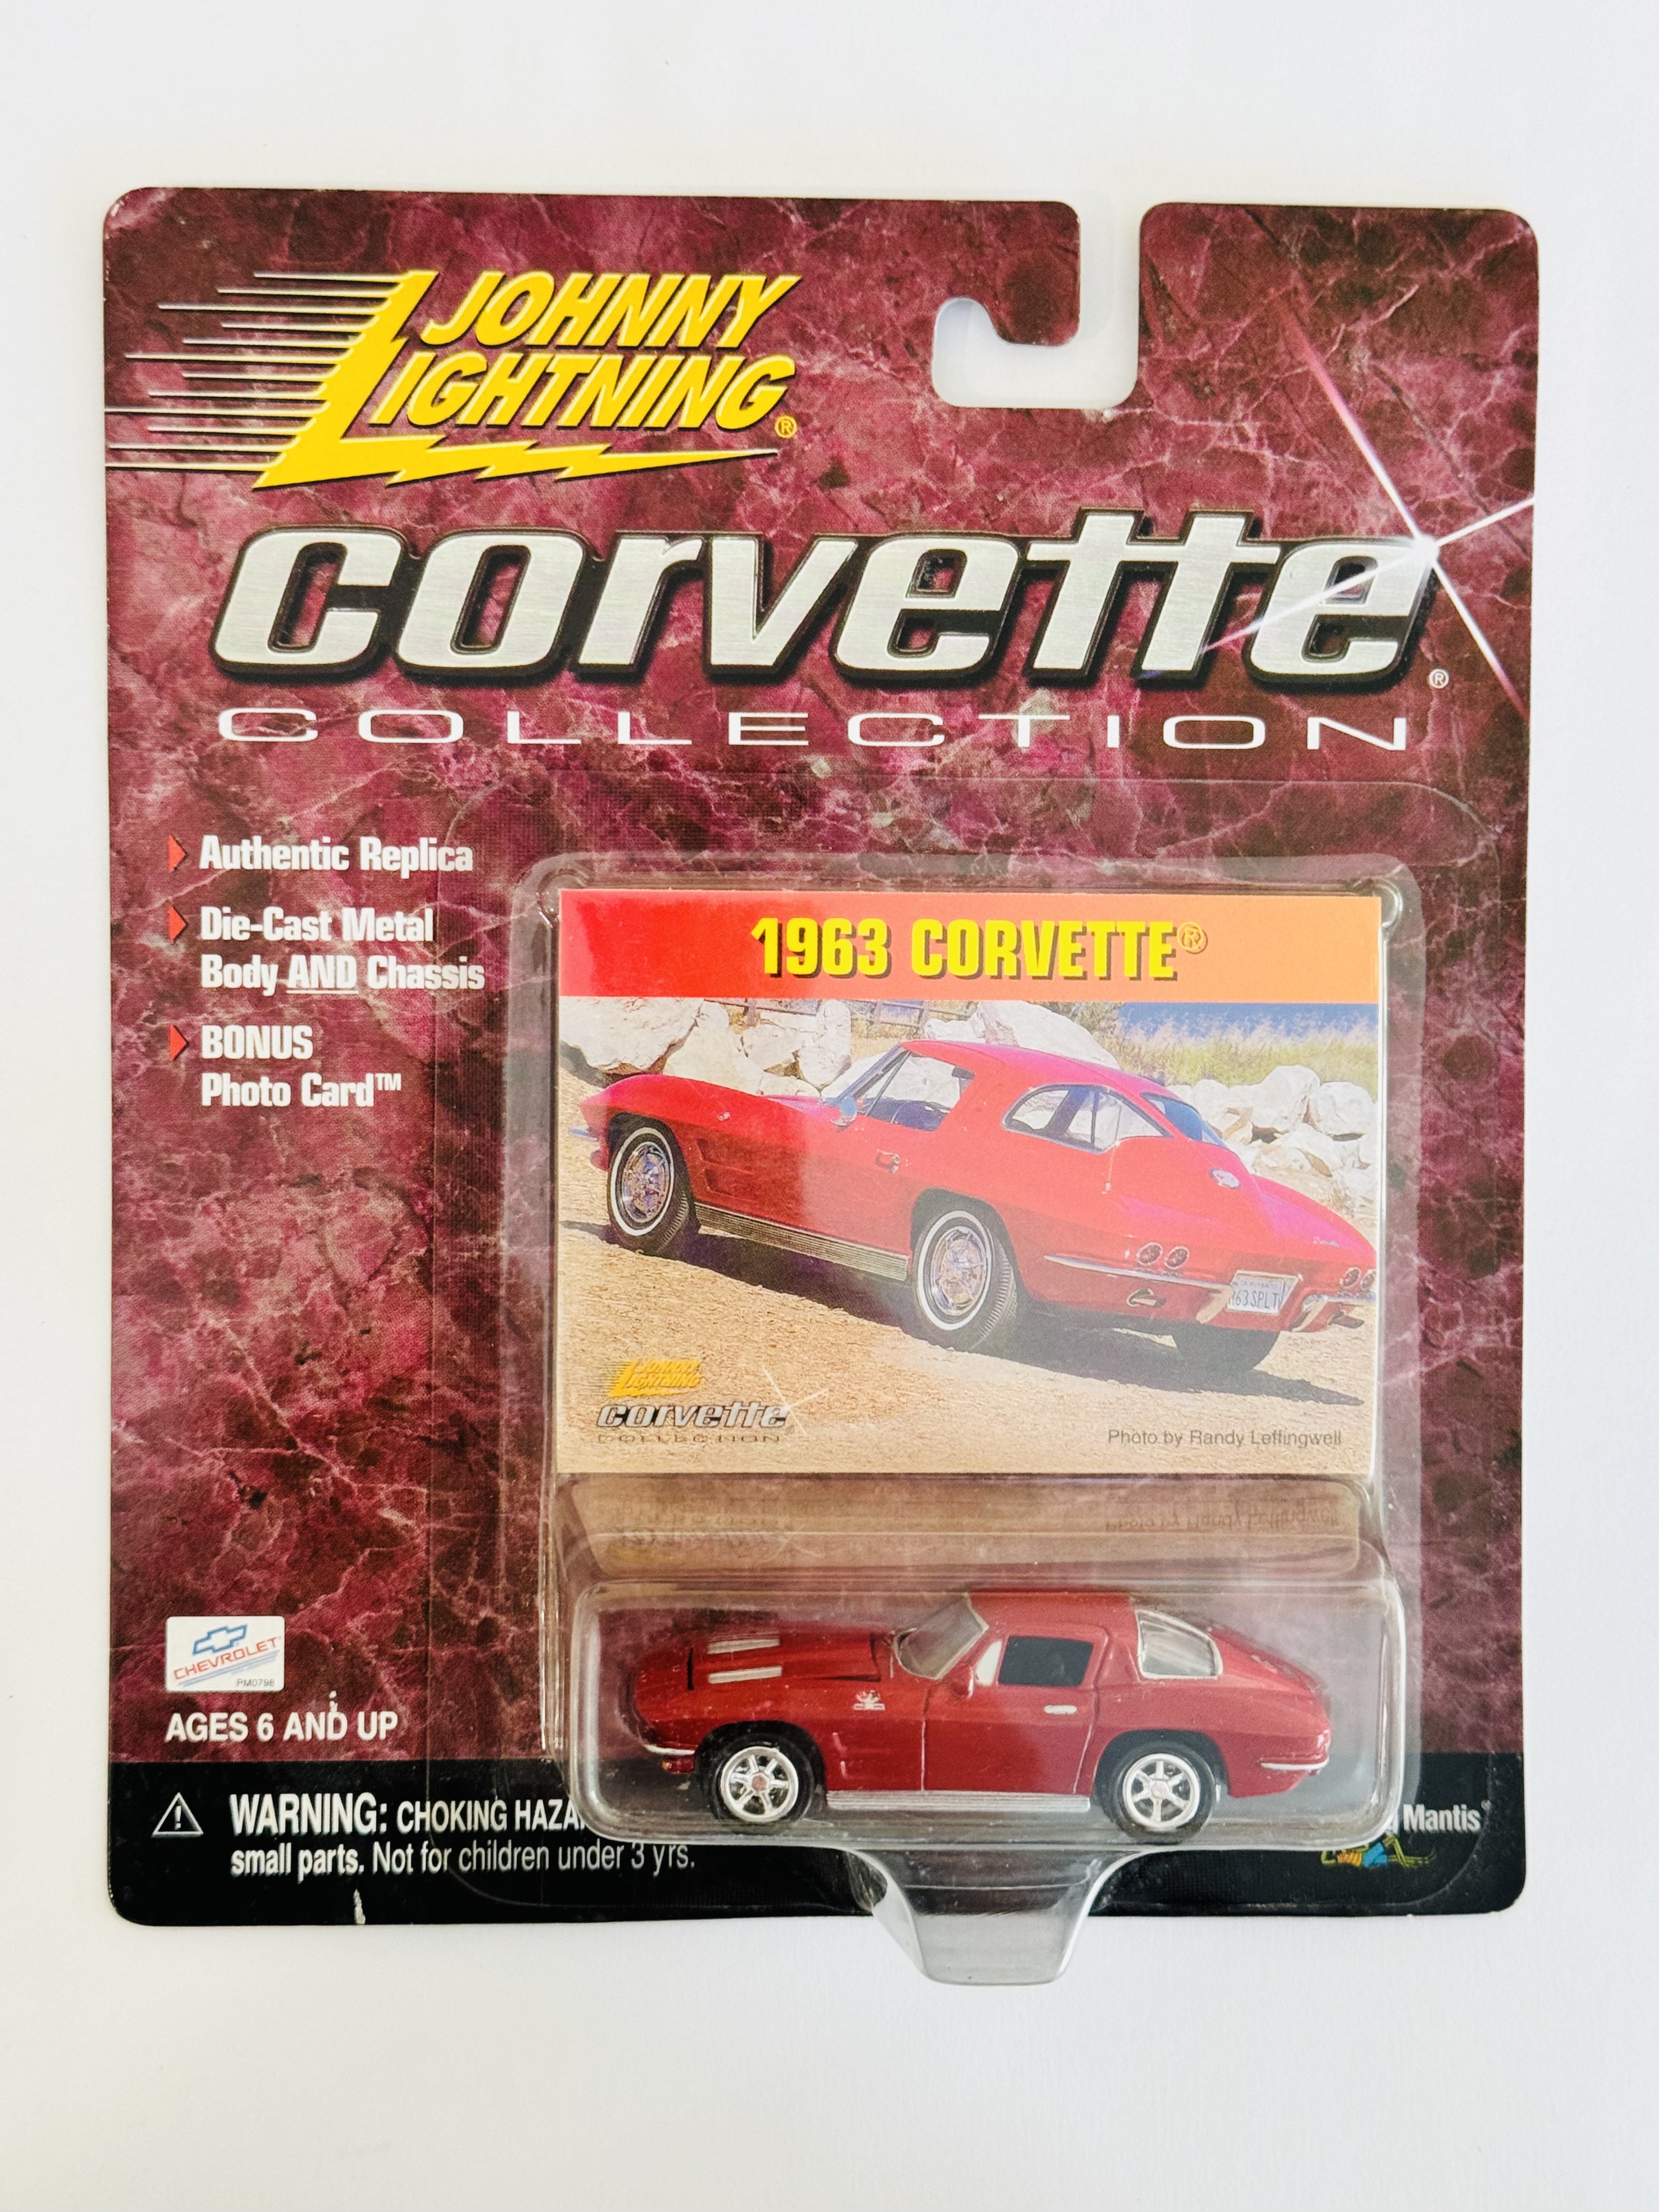 Johnny Lightning Corvette Collection 1963 Corvette